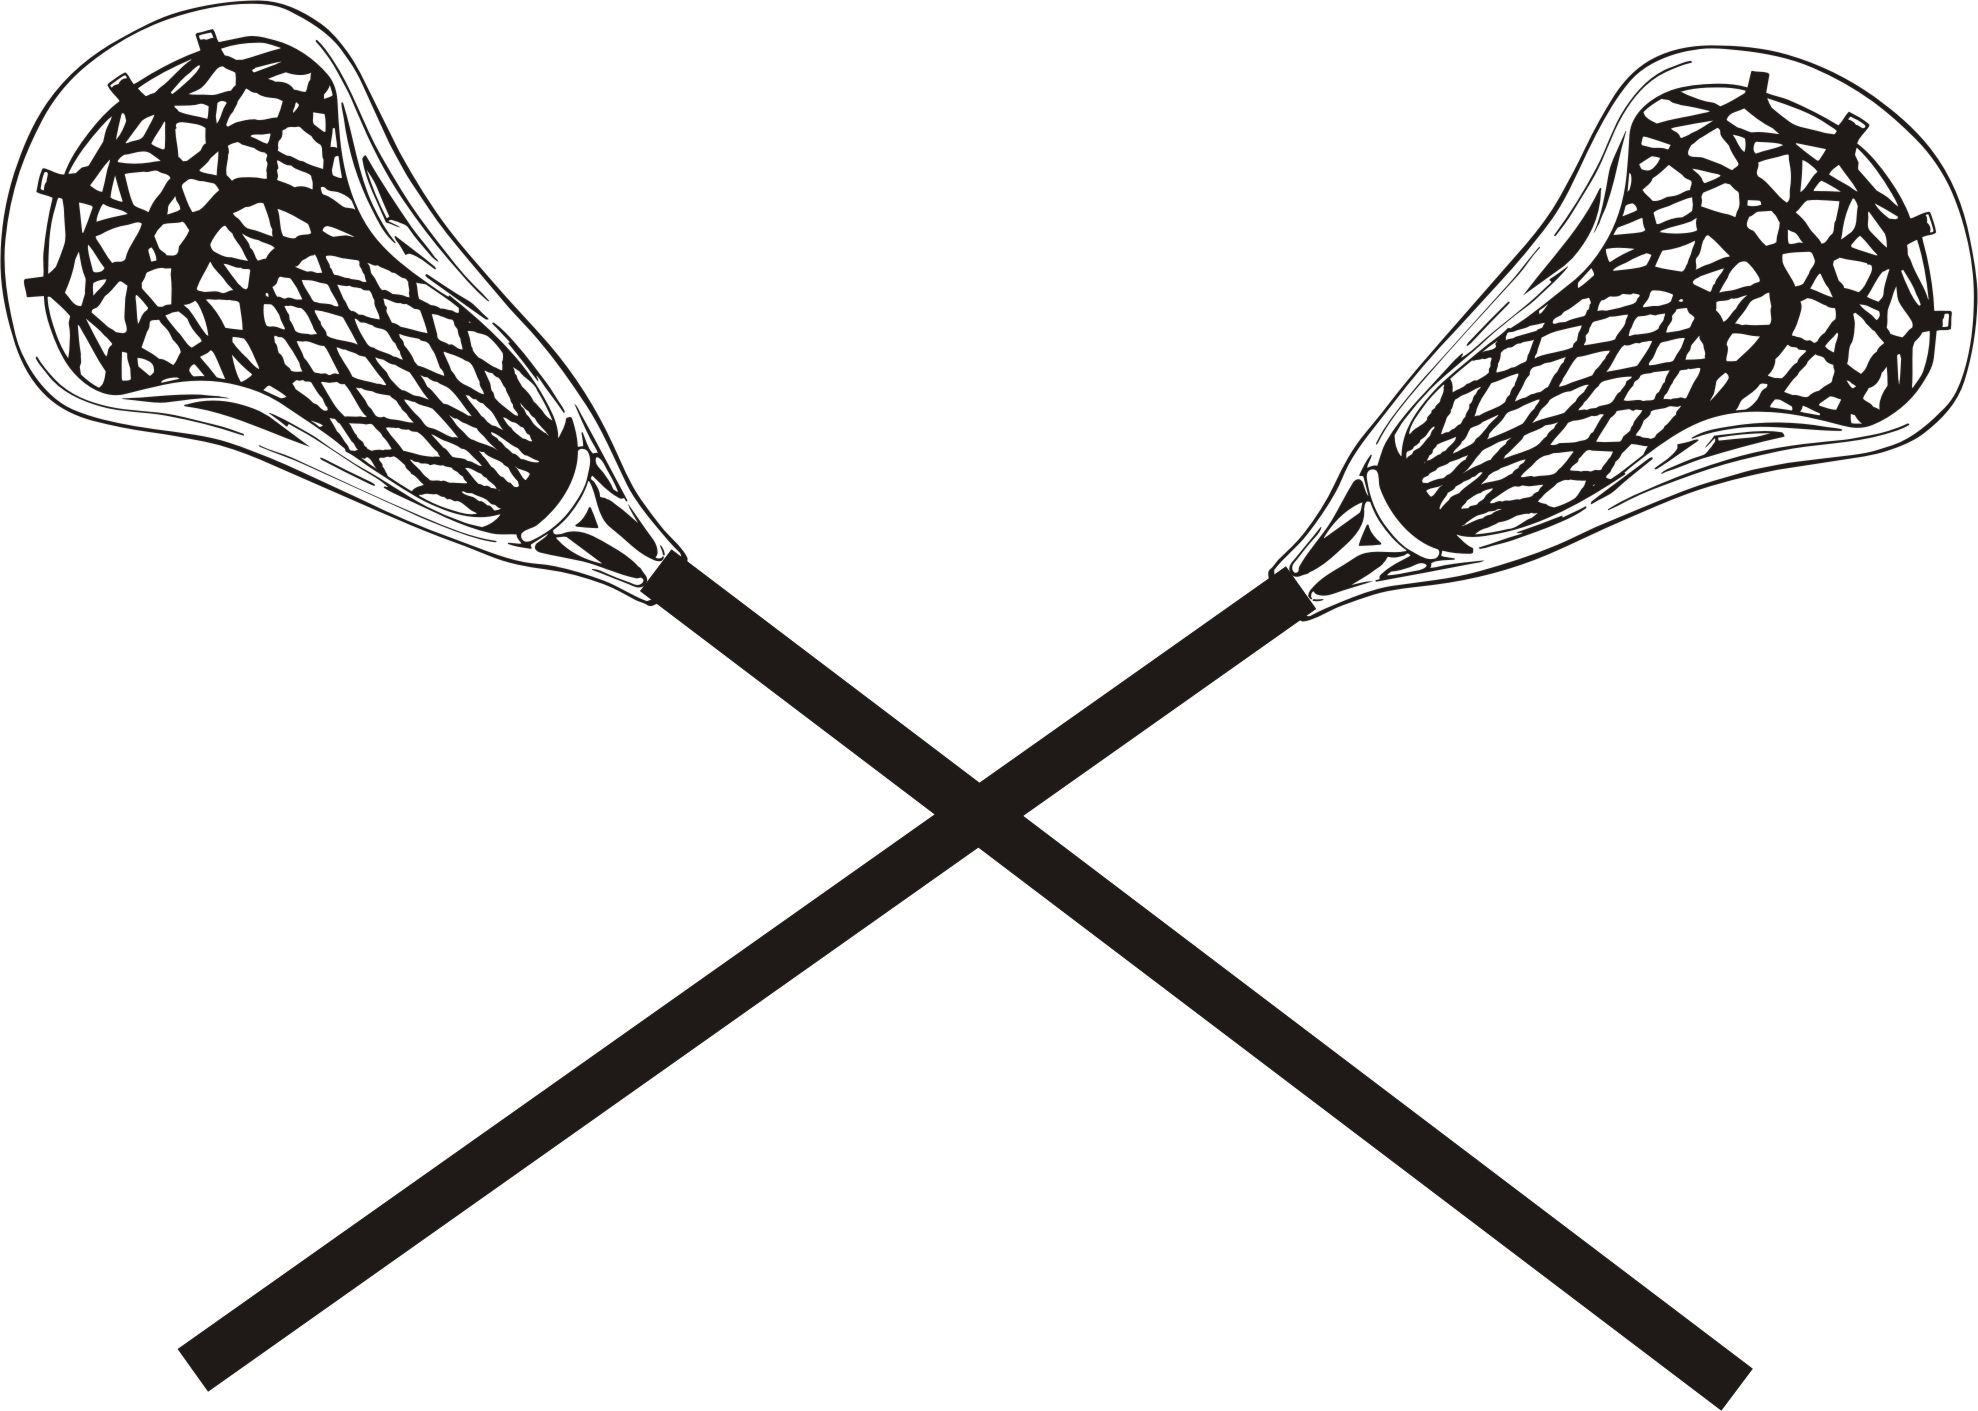 Lacrosse clip art images . - Lacrosse Sticks Clipart